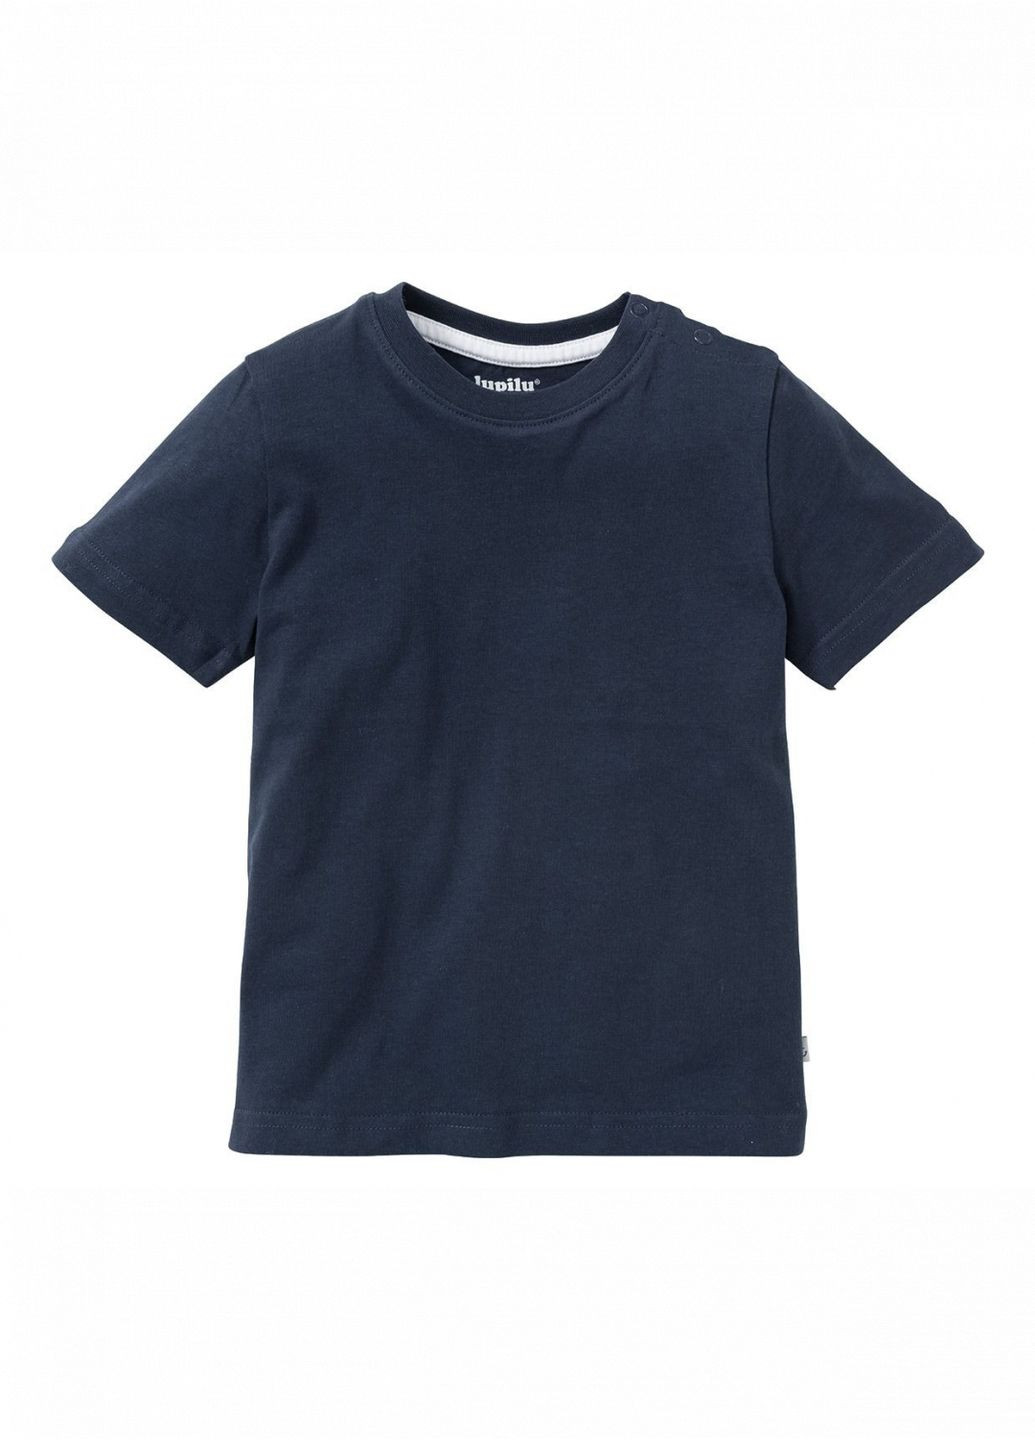 Темно-синя демісезонна футболка бавовняна для хлопчика 396769 темно-синій Lupilu